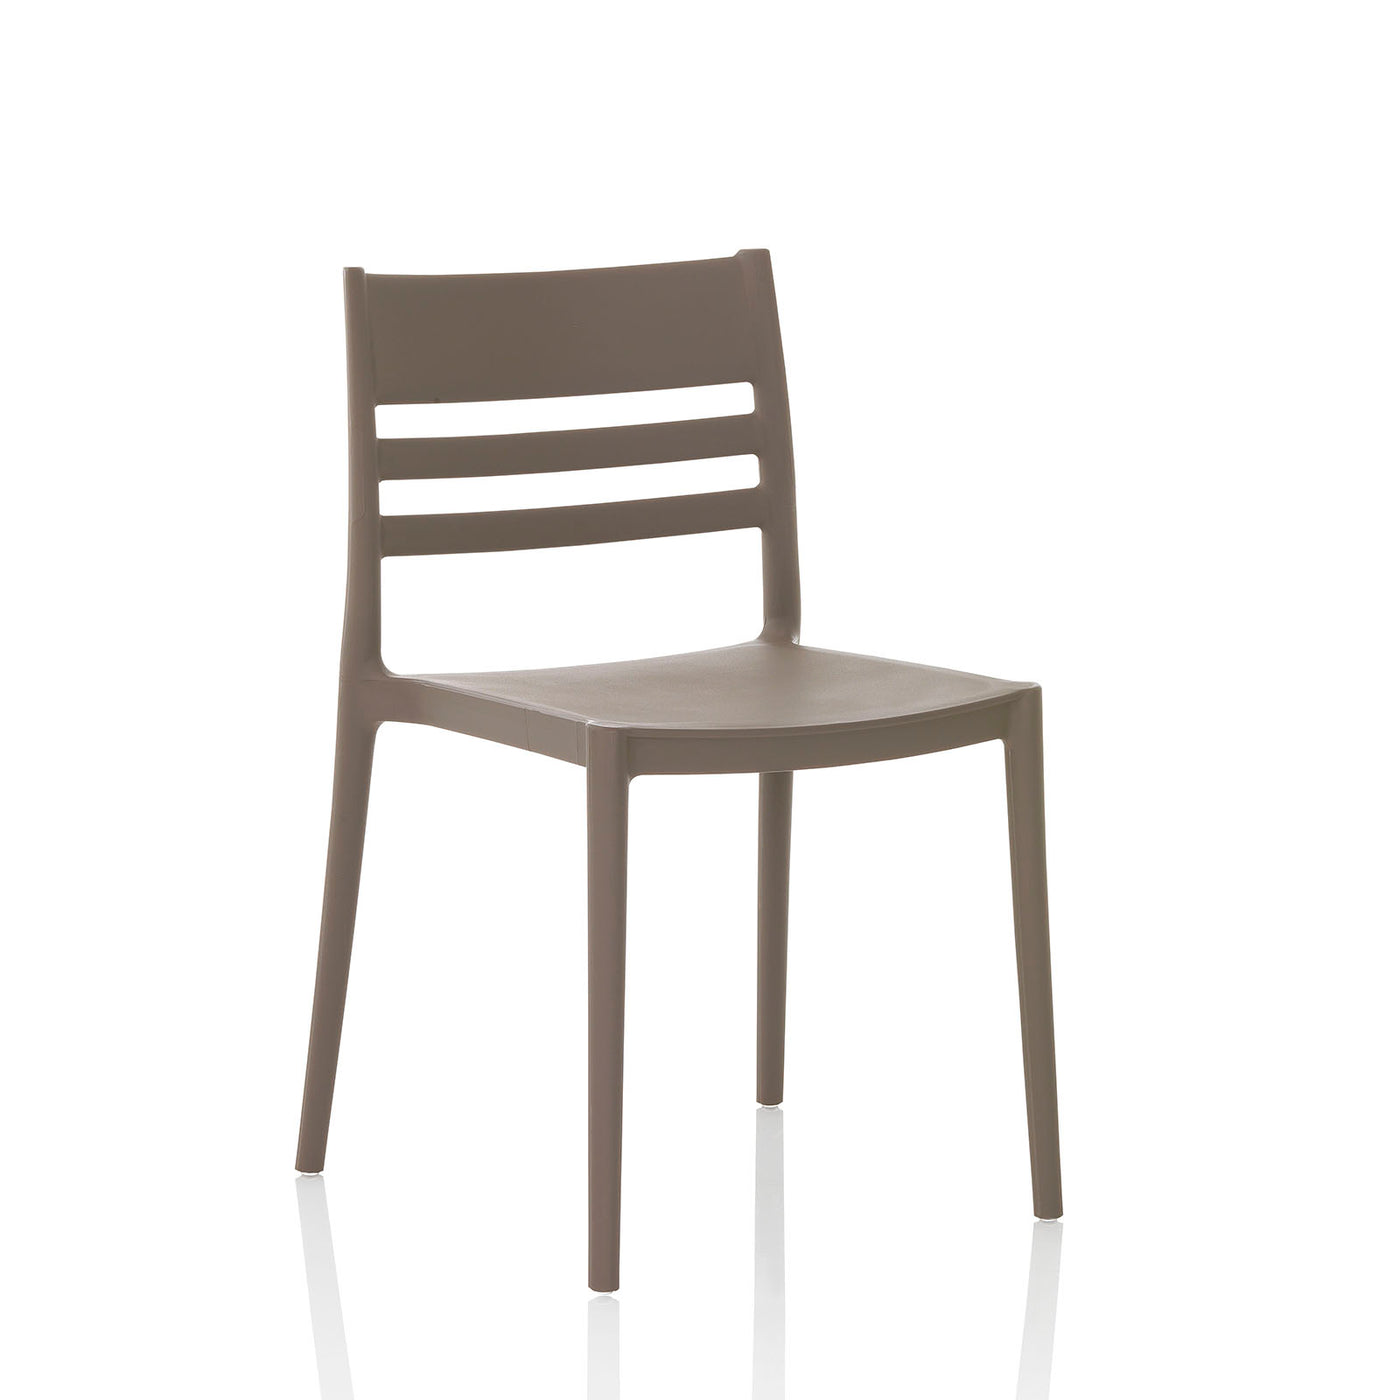 Set of 4 indoor/outdoor chairs CLYDE grey